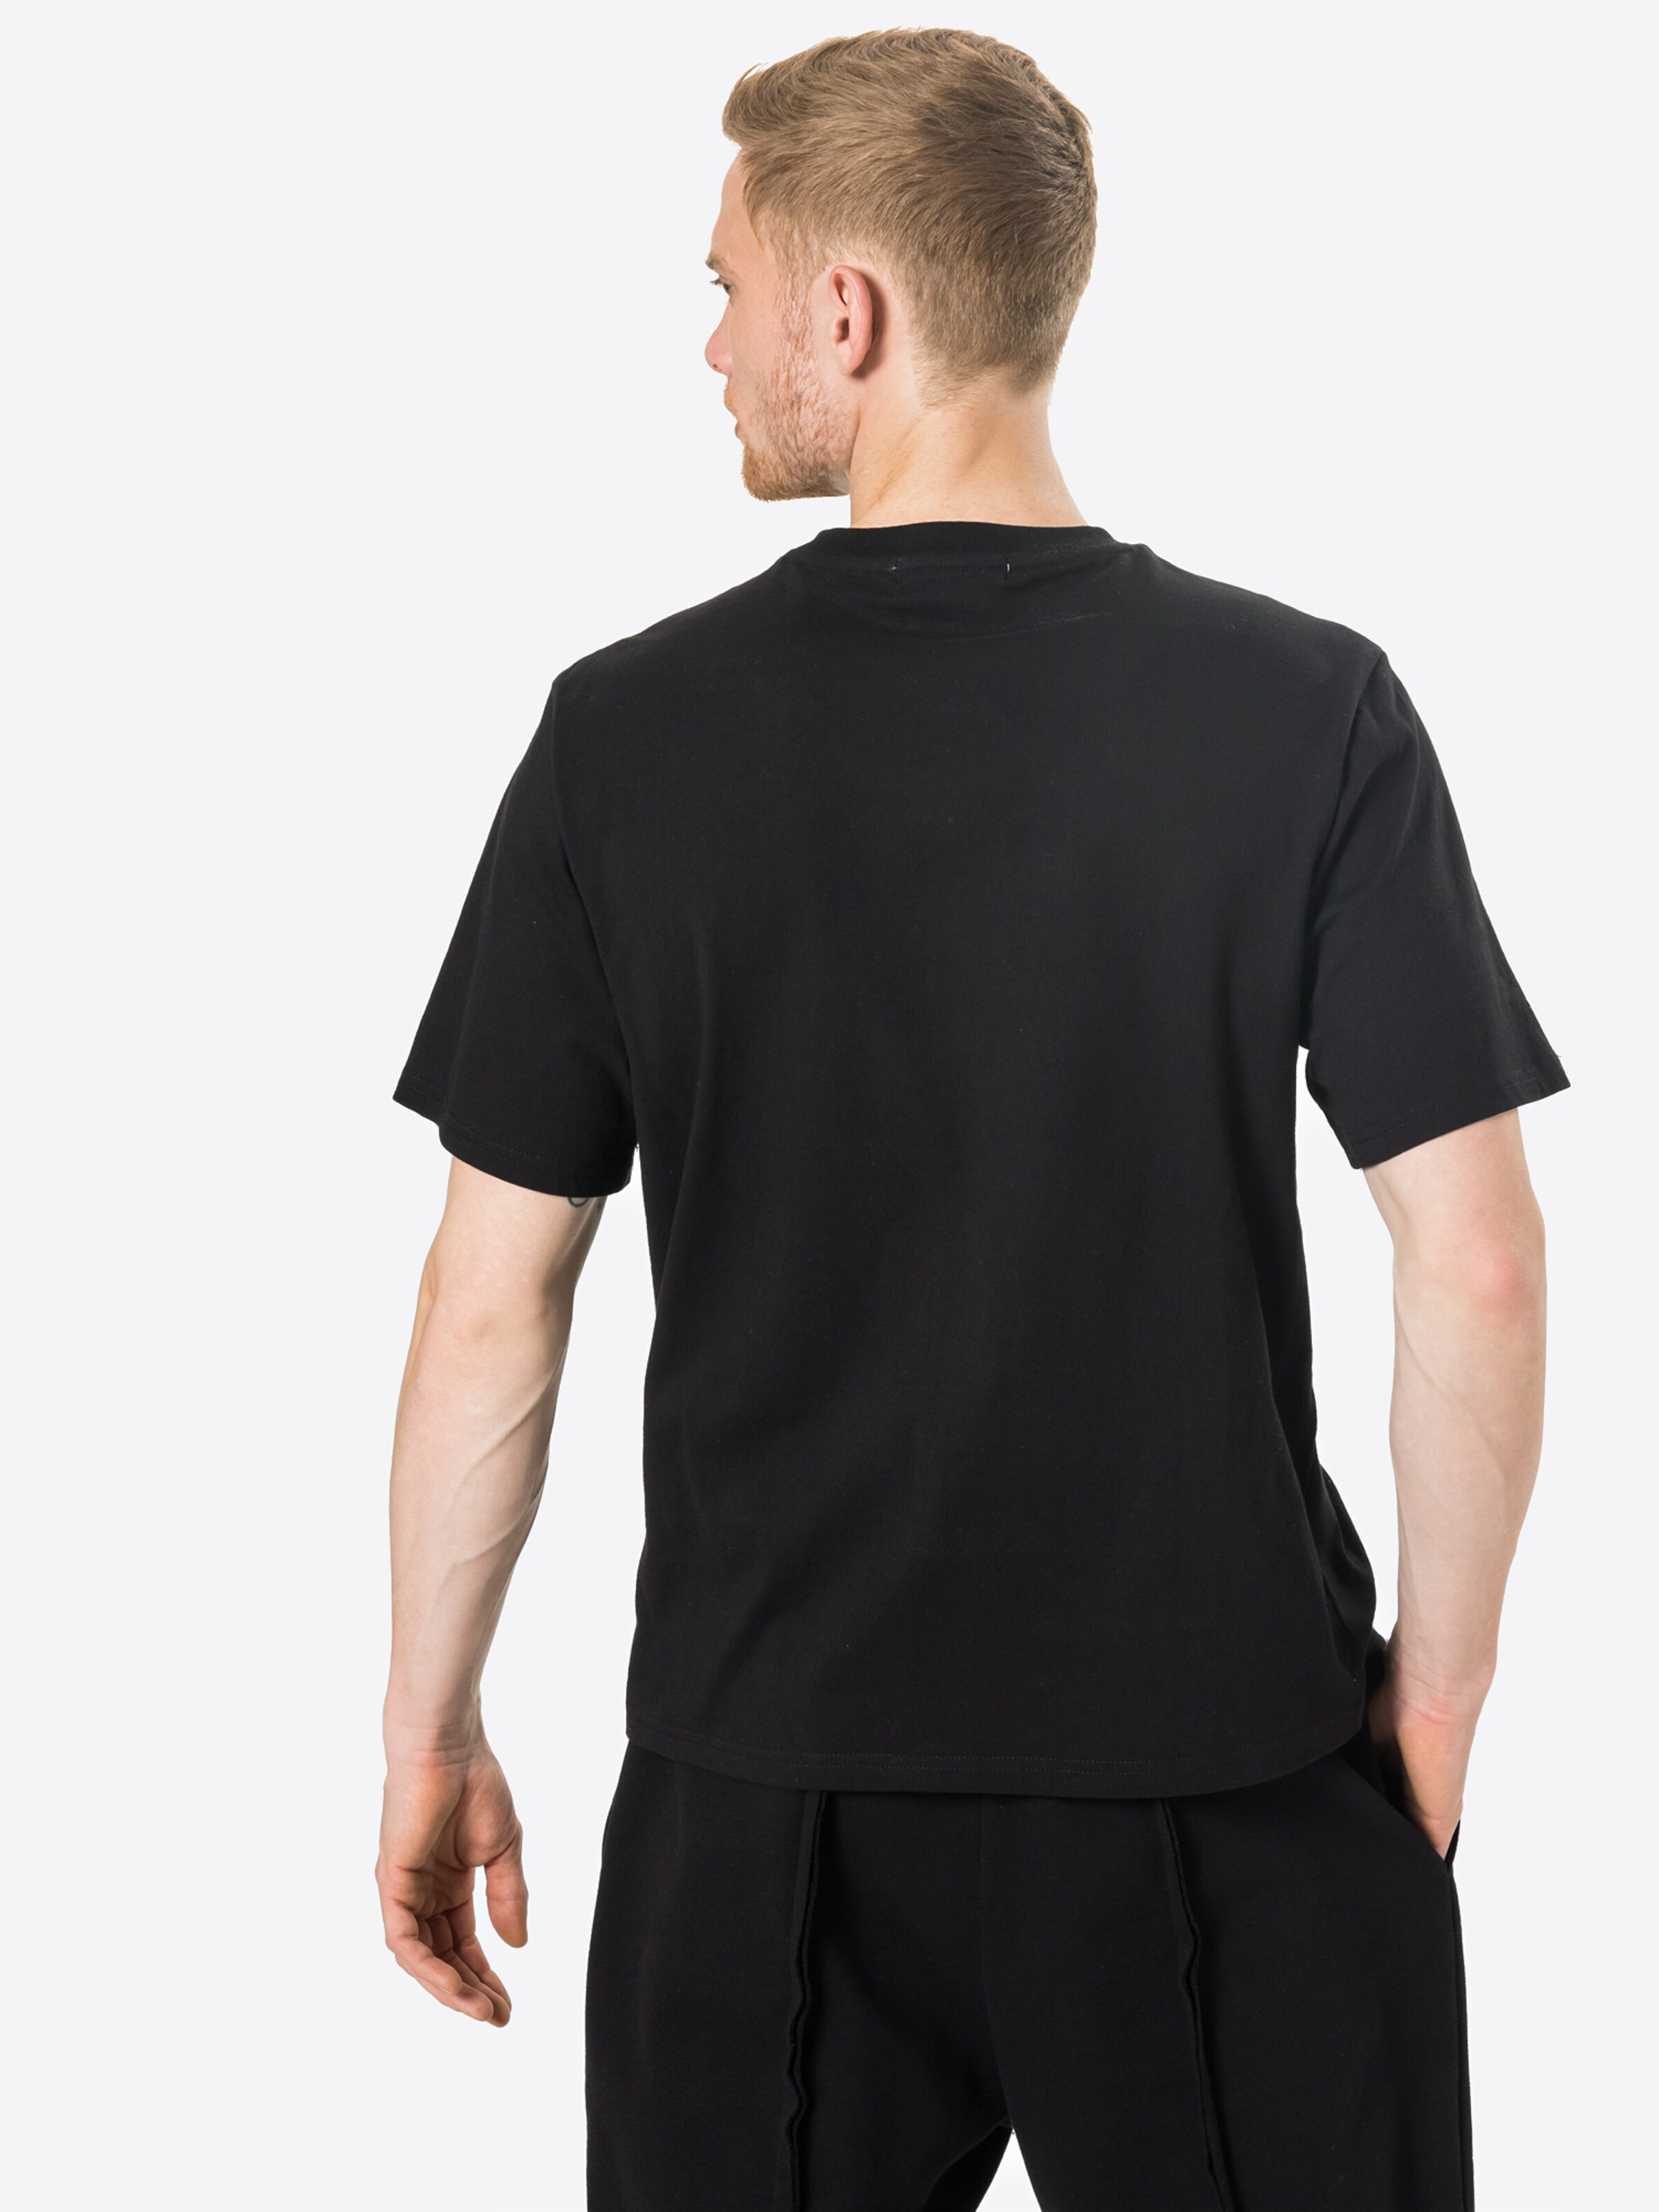 Männer Shirts Limited Shirt 'Sammy' by Jonathan Steinig in Schwarz - QJ17841